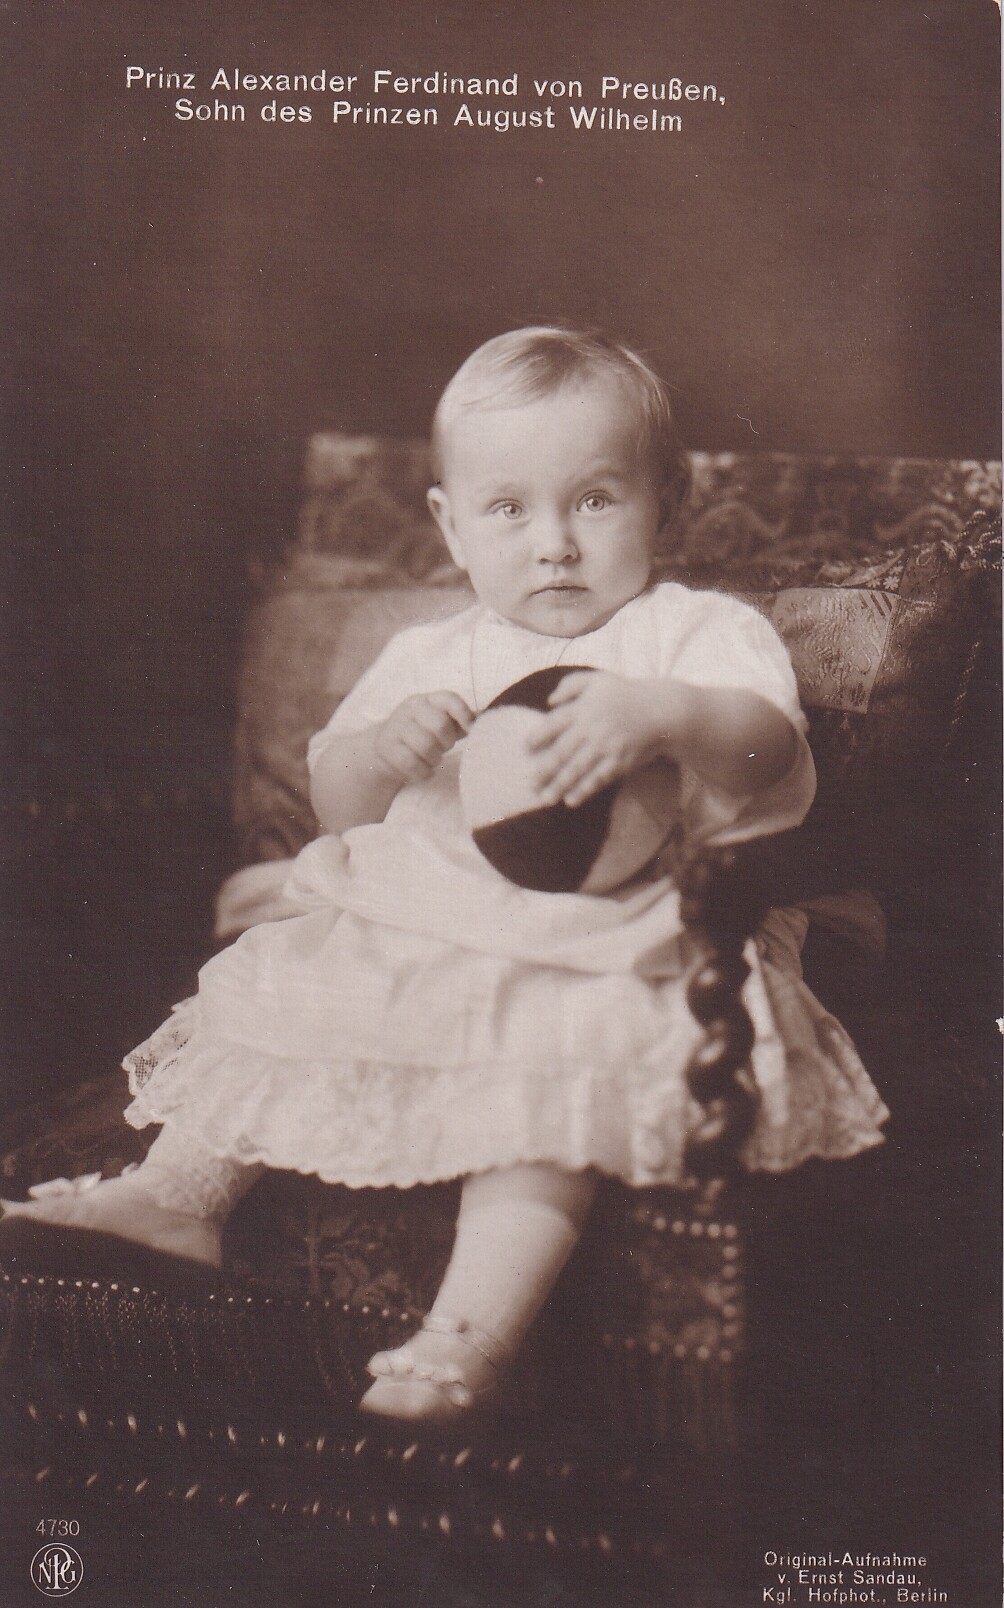 Bildpostkarte mit Foto des Prinzen Alexander Ferdinand von Preußen, 1914 (Schloß Wernigerode GmbH RR-F)